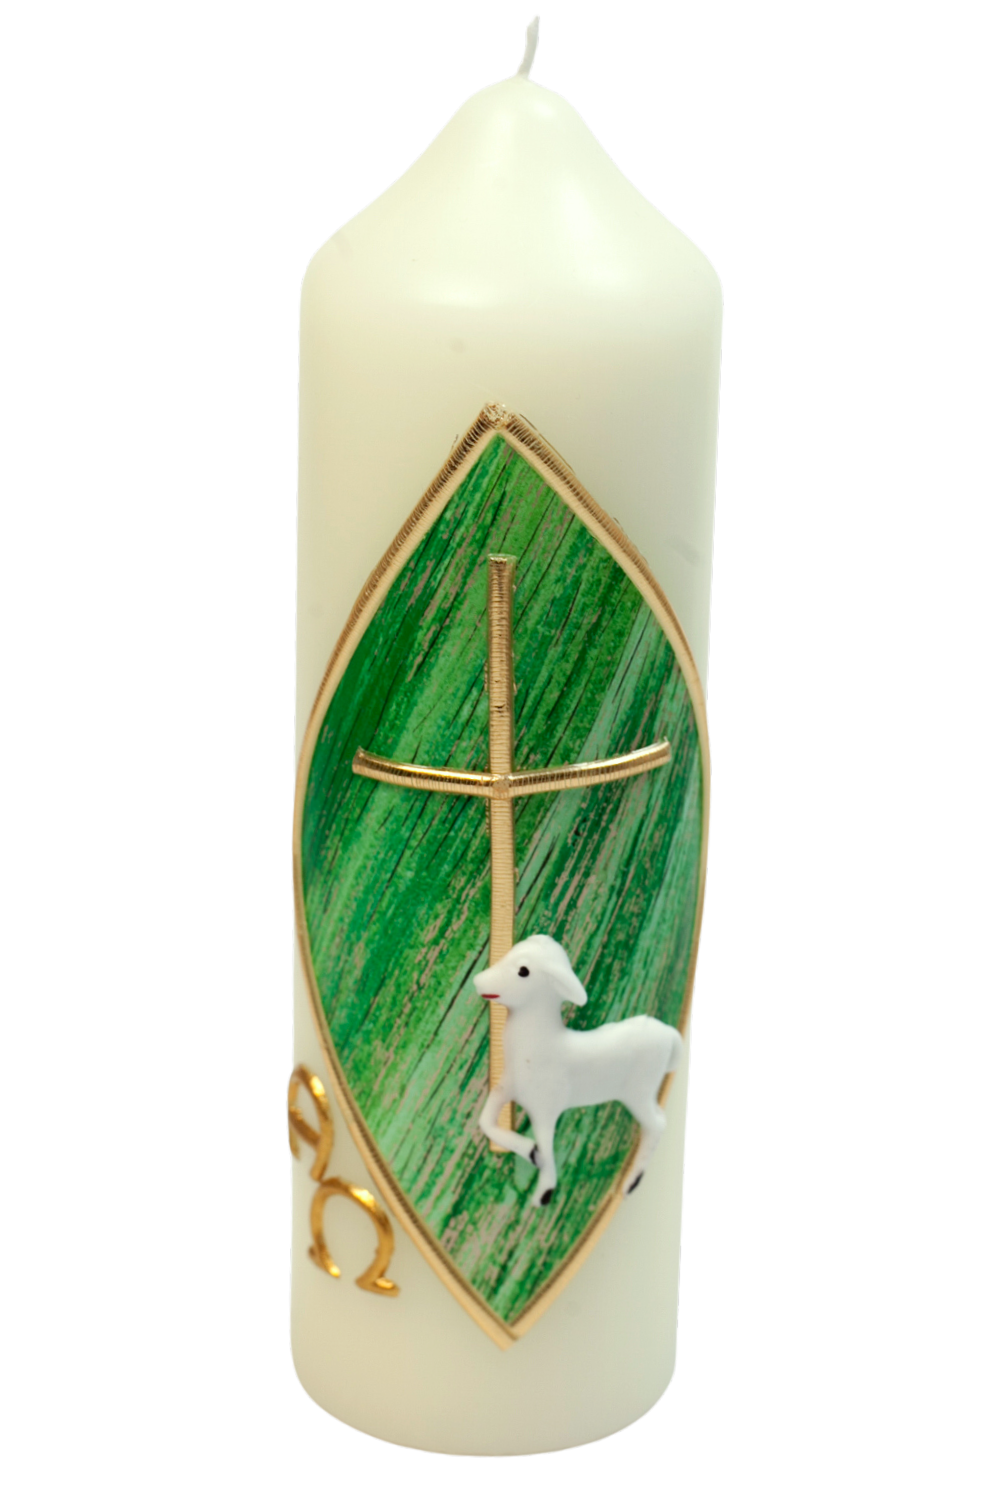 Osterkerze - Lamm auf grünem Hintergrund